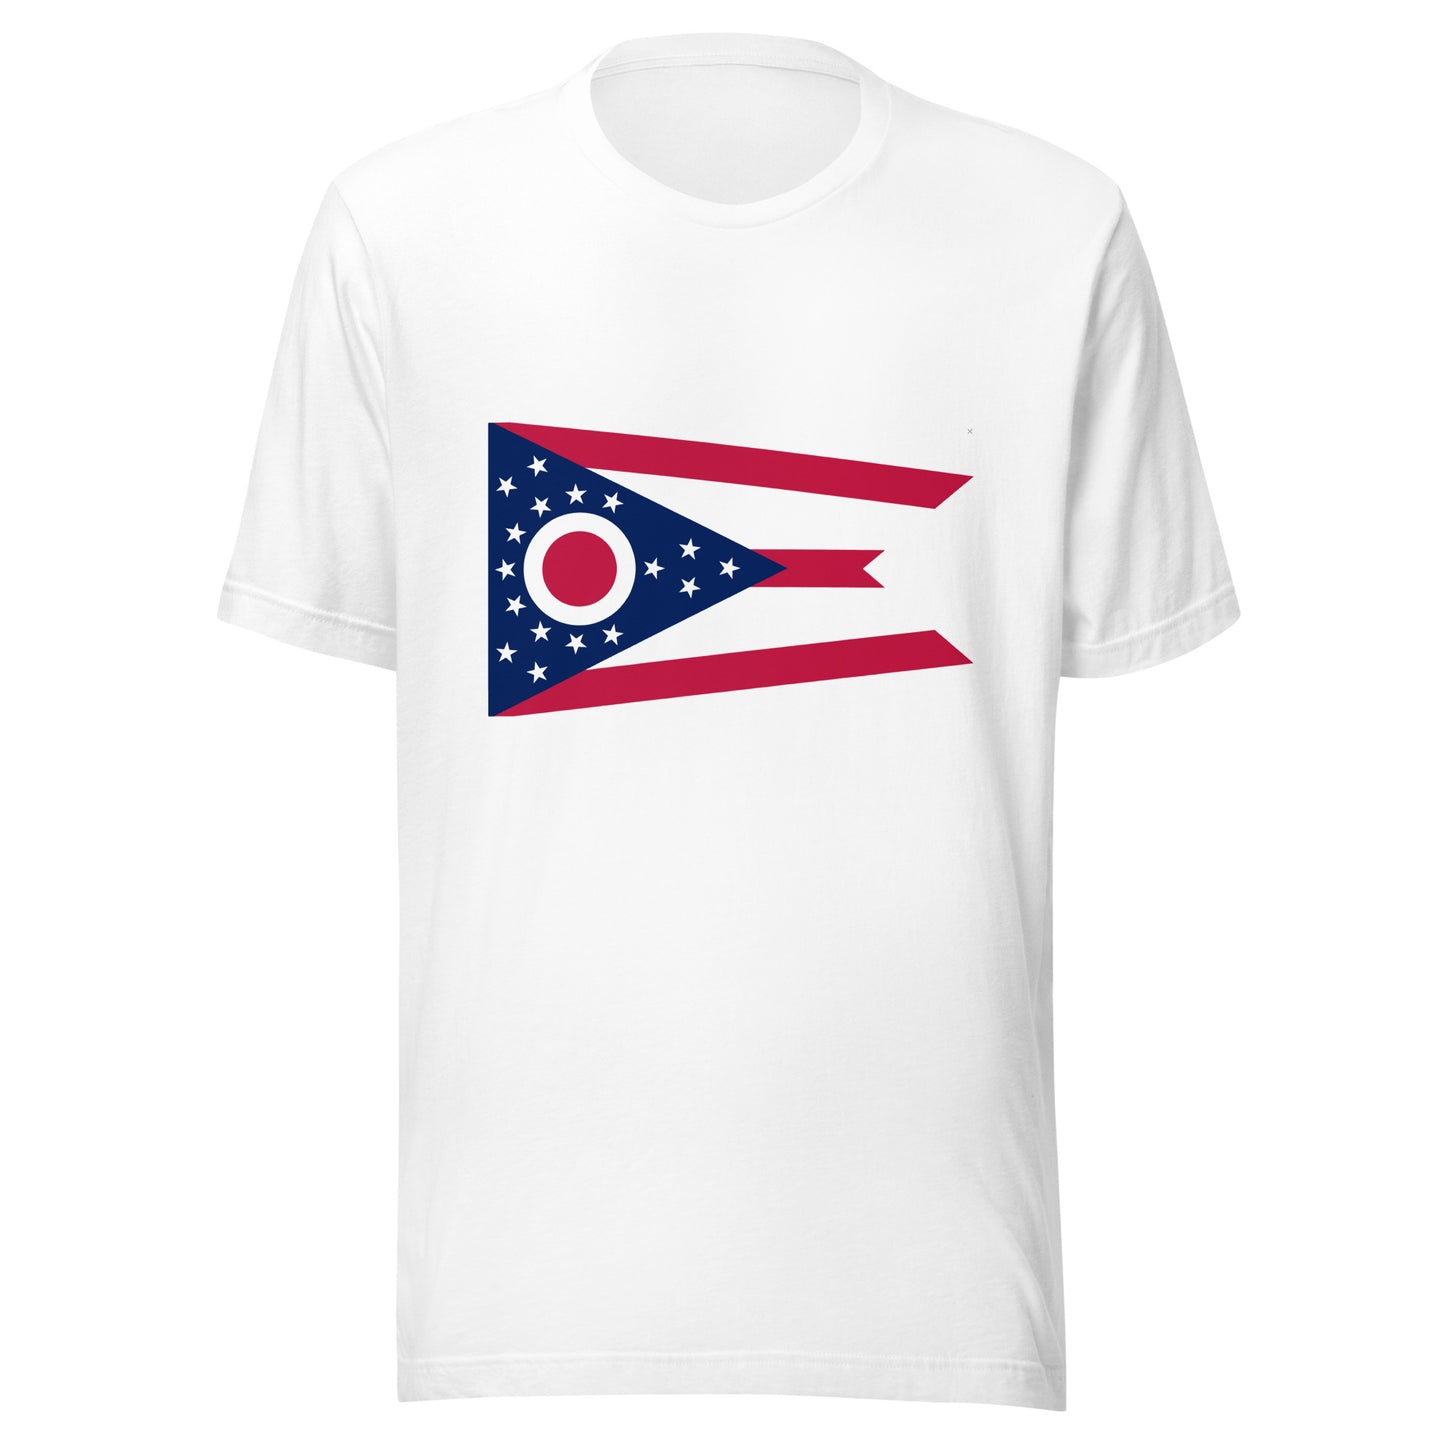 Ohio flag Unisex t-shirt